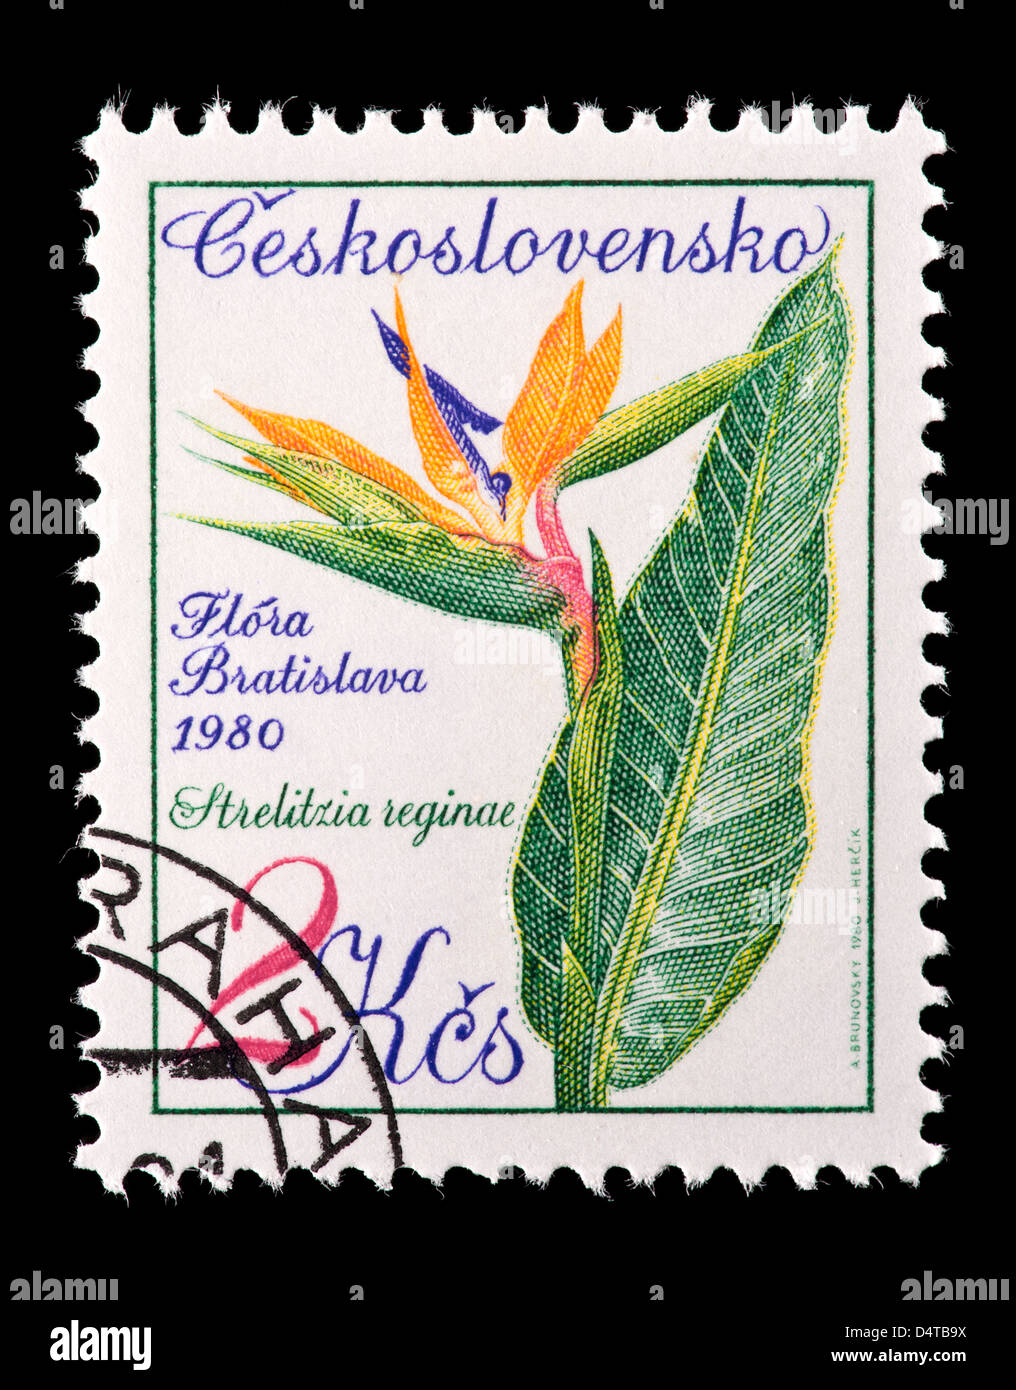 Timbre-poste de la Tchécoslovaquie représentant un oiseau de paradis (Strelitzia reginae) fleurs Banque D'Images